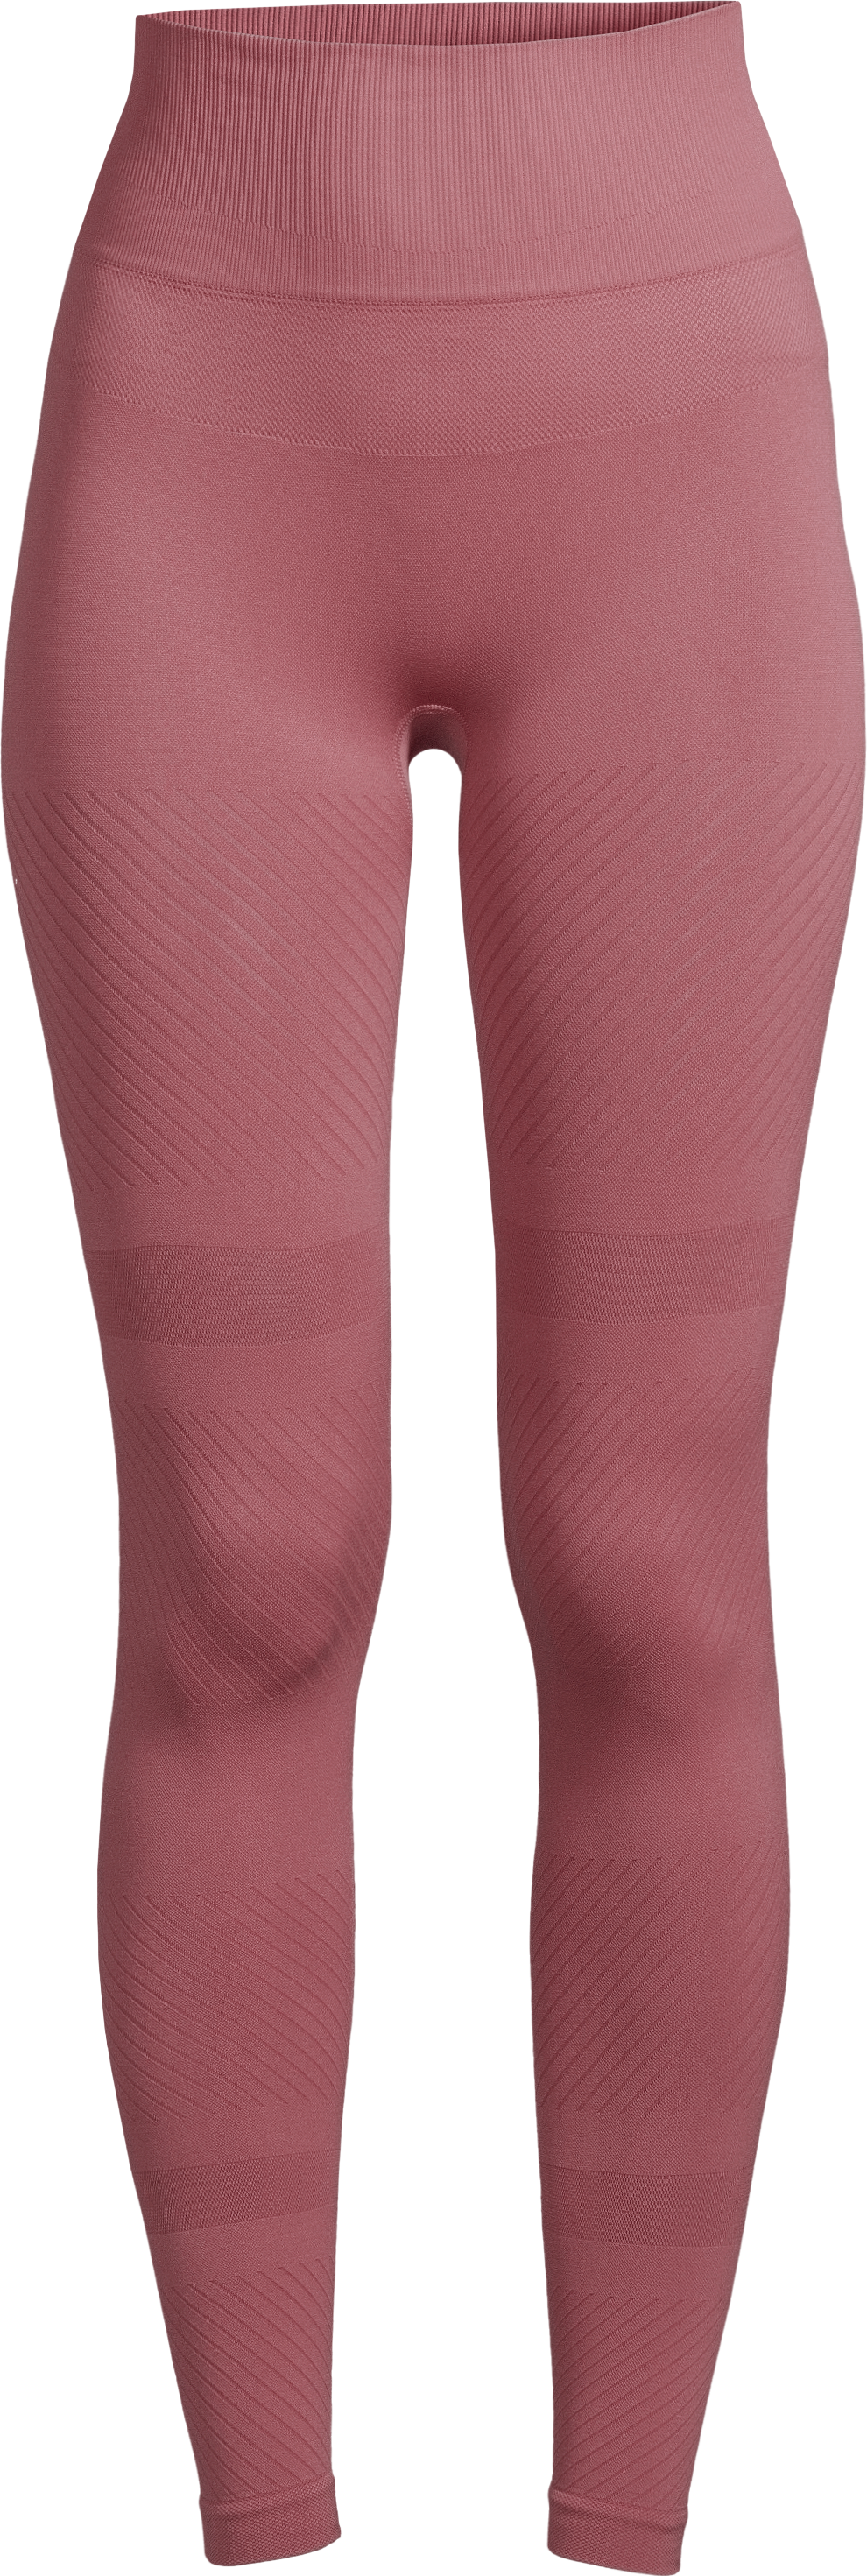 https://www.fjellsport.no/assets/blobs/casall-women-s-essential-block-seamless-high-waist-tights-dusty-green-b1642db66e.png